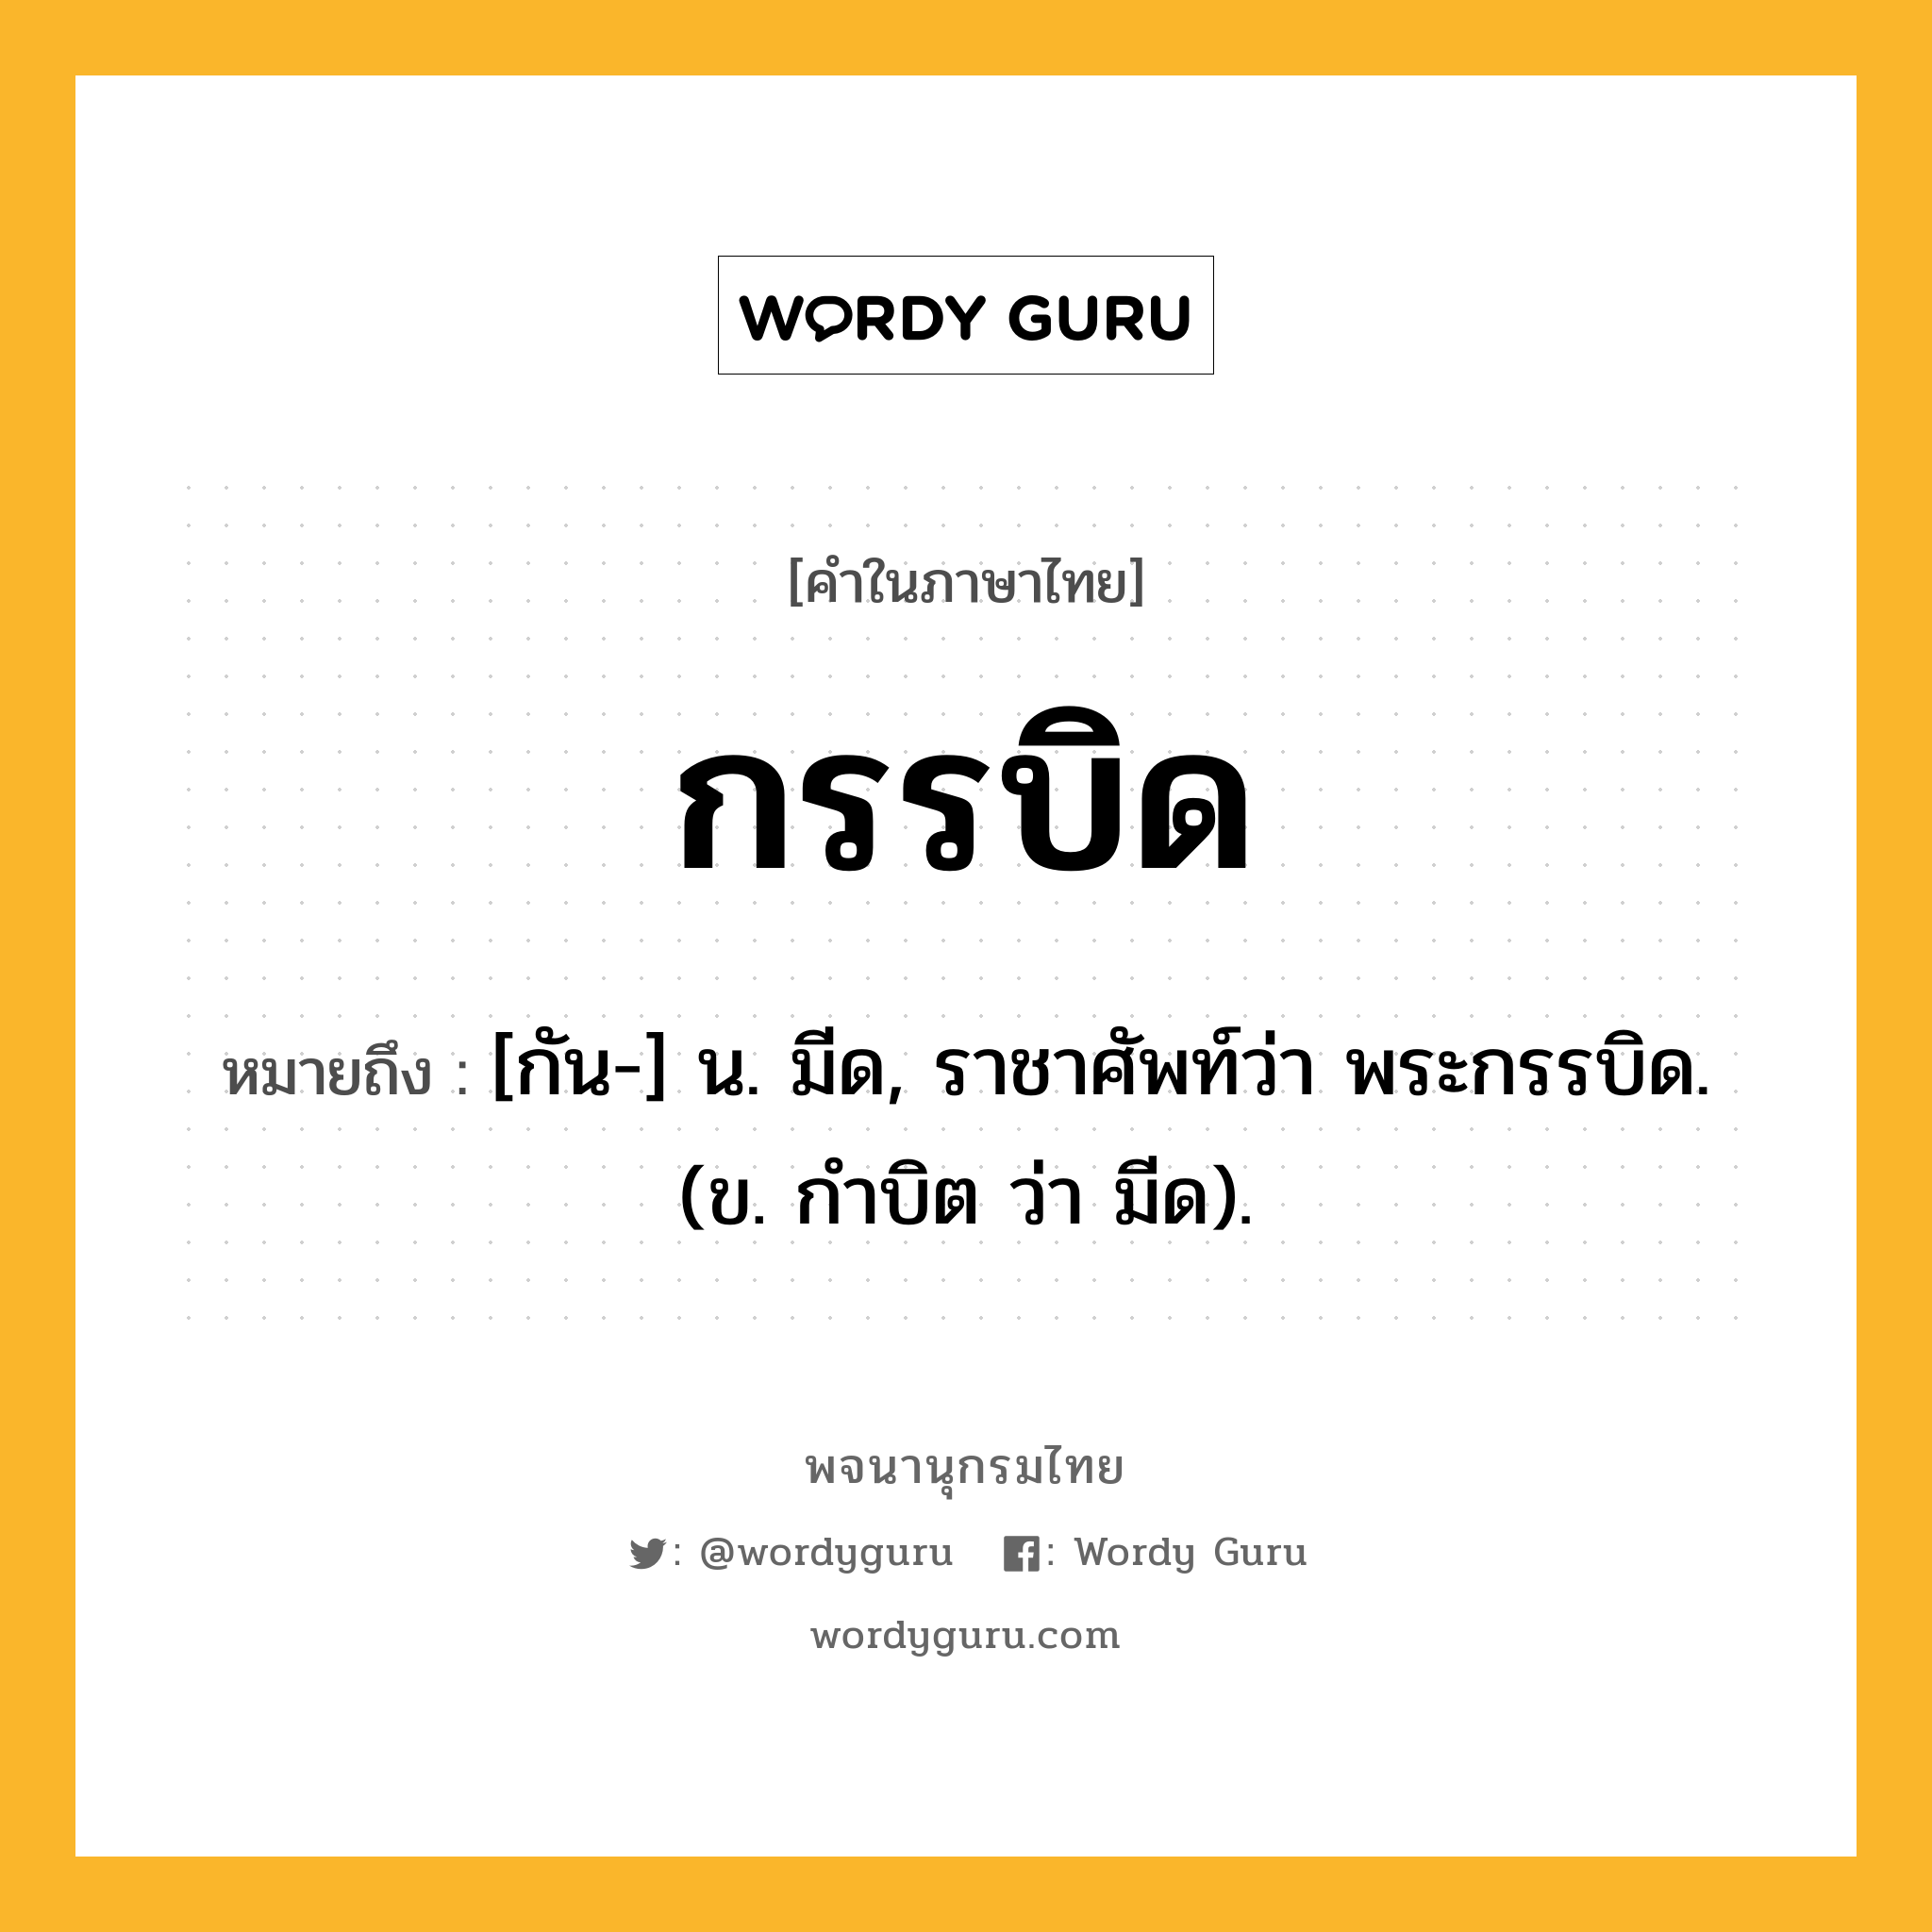 กรรบิด ความหมาย หมายถึงอะไร?, คำในภาษาไทย กรรบิด หมายถึง [กัน-] น. มีด, ราชาศัพท์ว่า พระกรรบิด. (ข. กำบิต ว่า มีด).